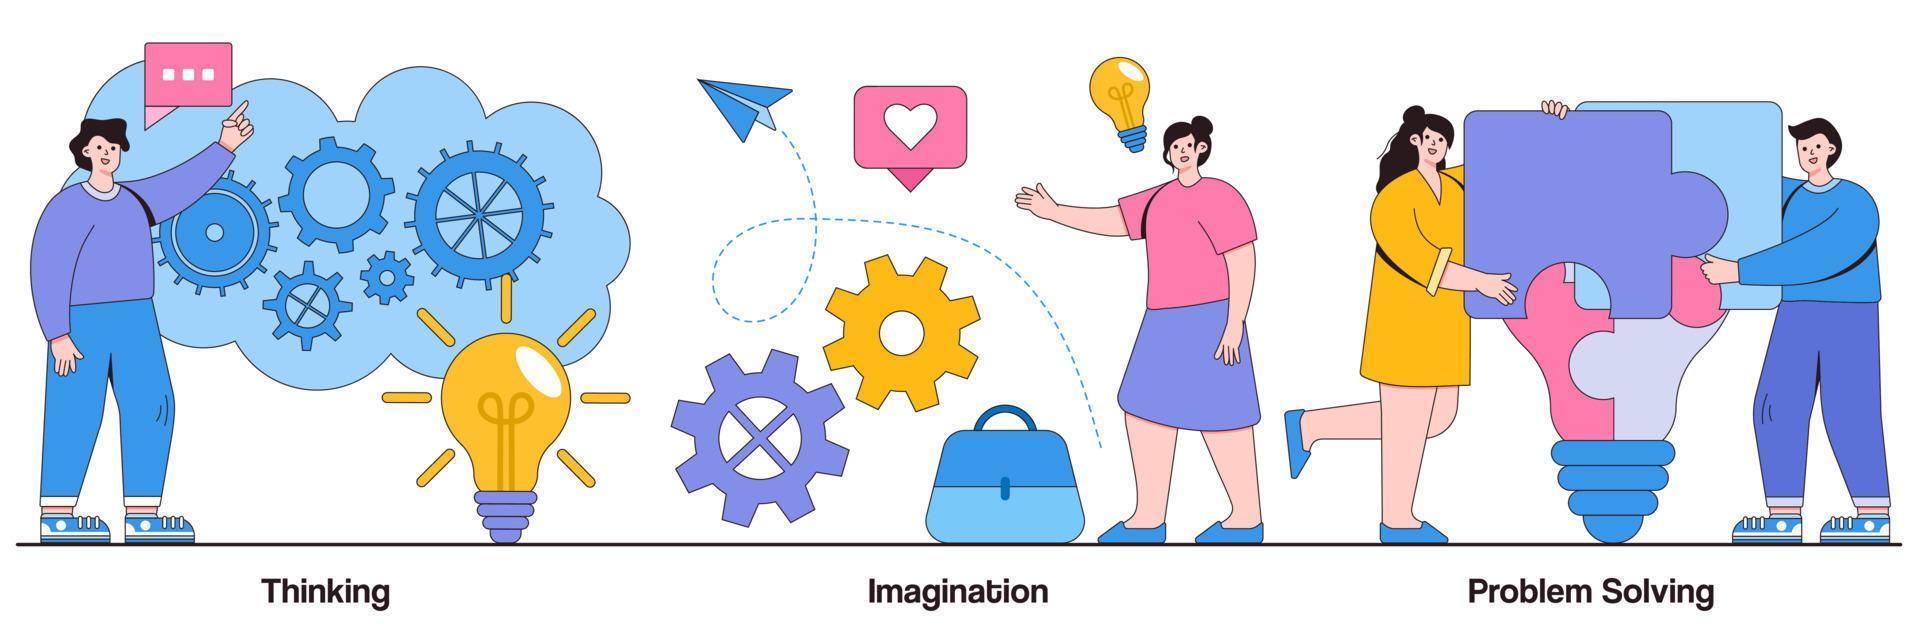 denken, verbeelding, probleemoplossend concept met kleine mensen. hersenactiviteit abstracte vector illustratie set. brainstormen, idee en fantasie, motivatie en inspiratie, vind oplossing metafoor